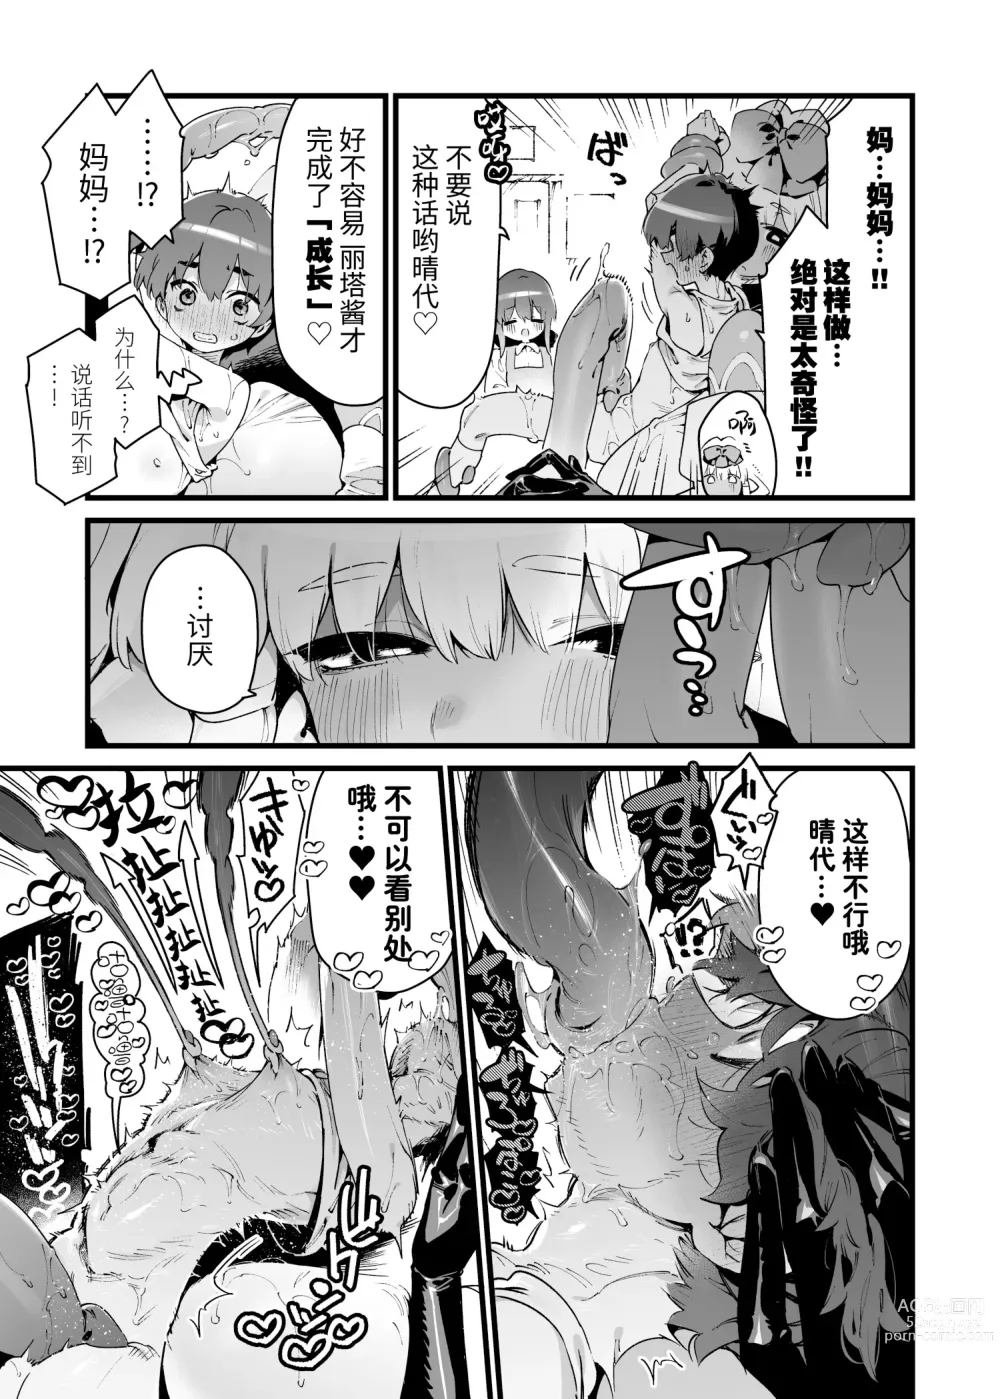 Page 12 of doujinshi Ano toki hirotte moratta shokushudesu